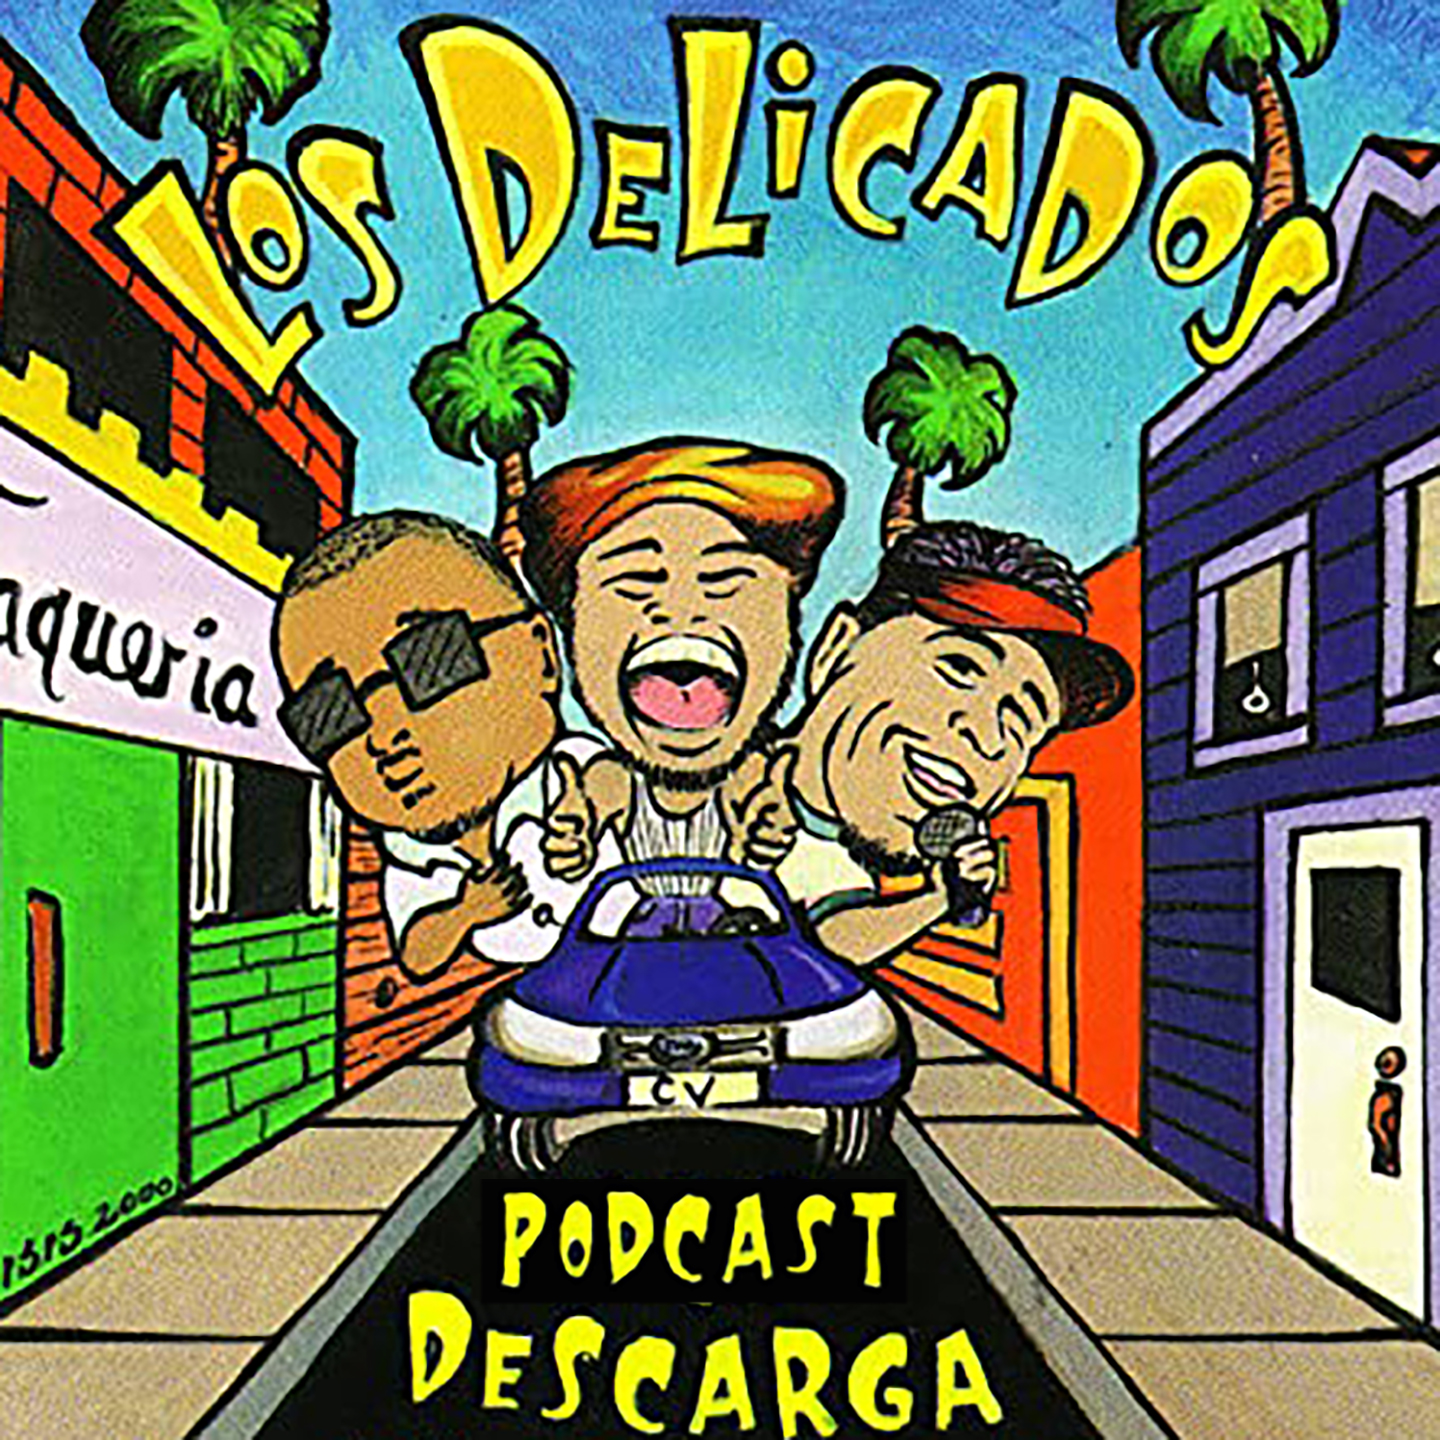 Artwork for Los Delicados' Podcast Descarga